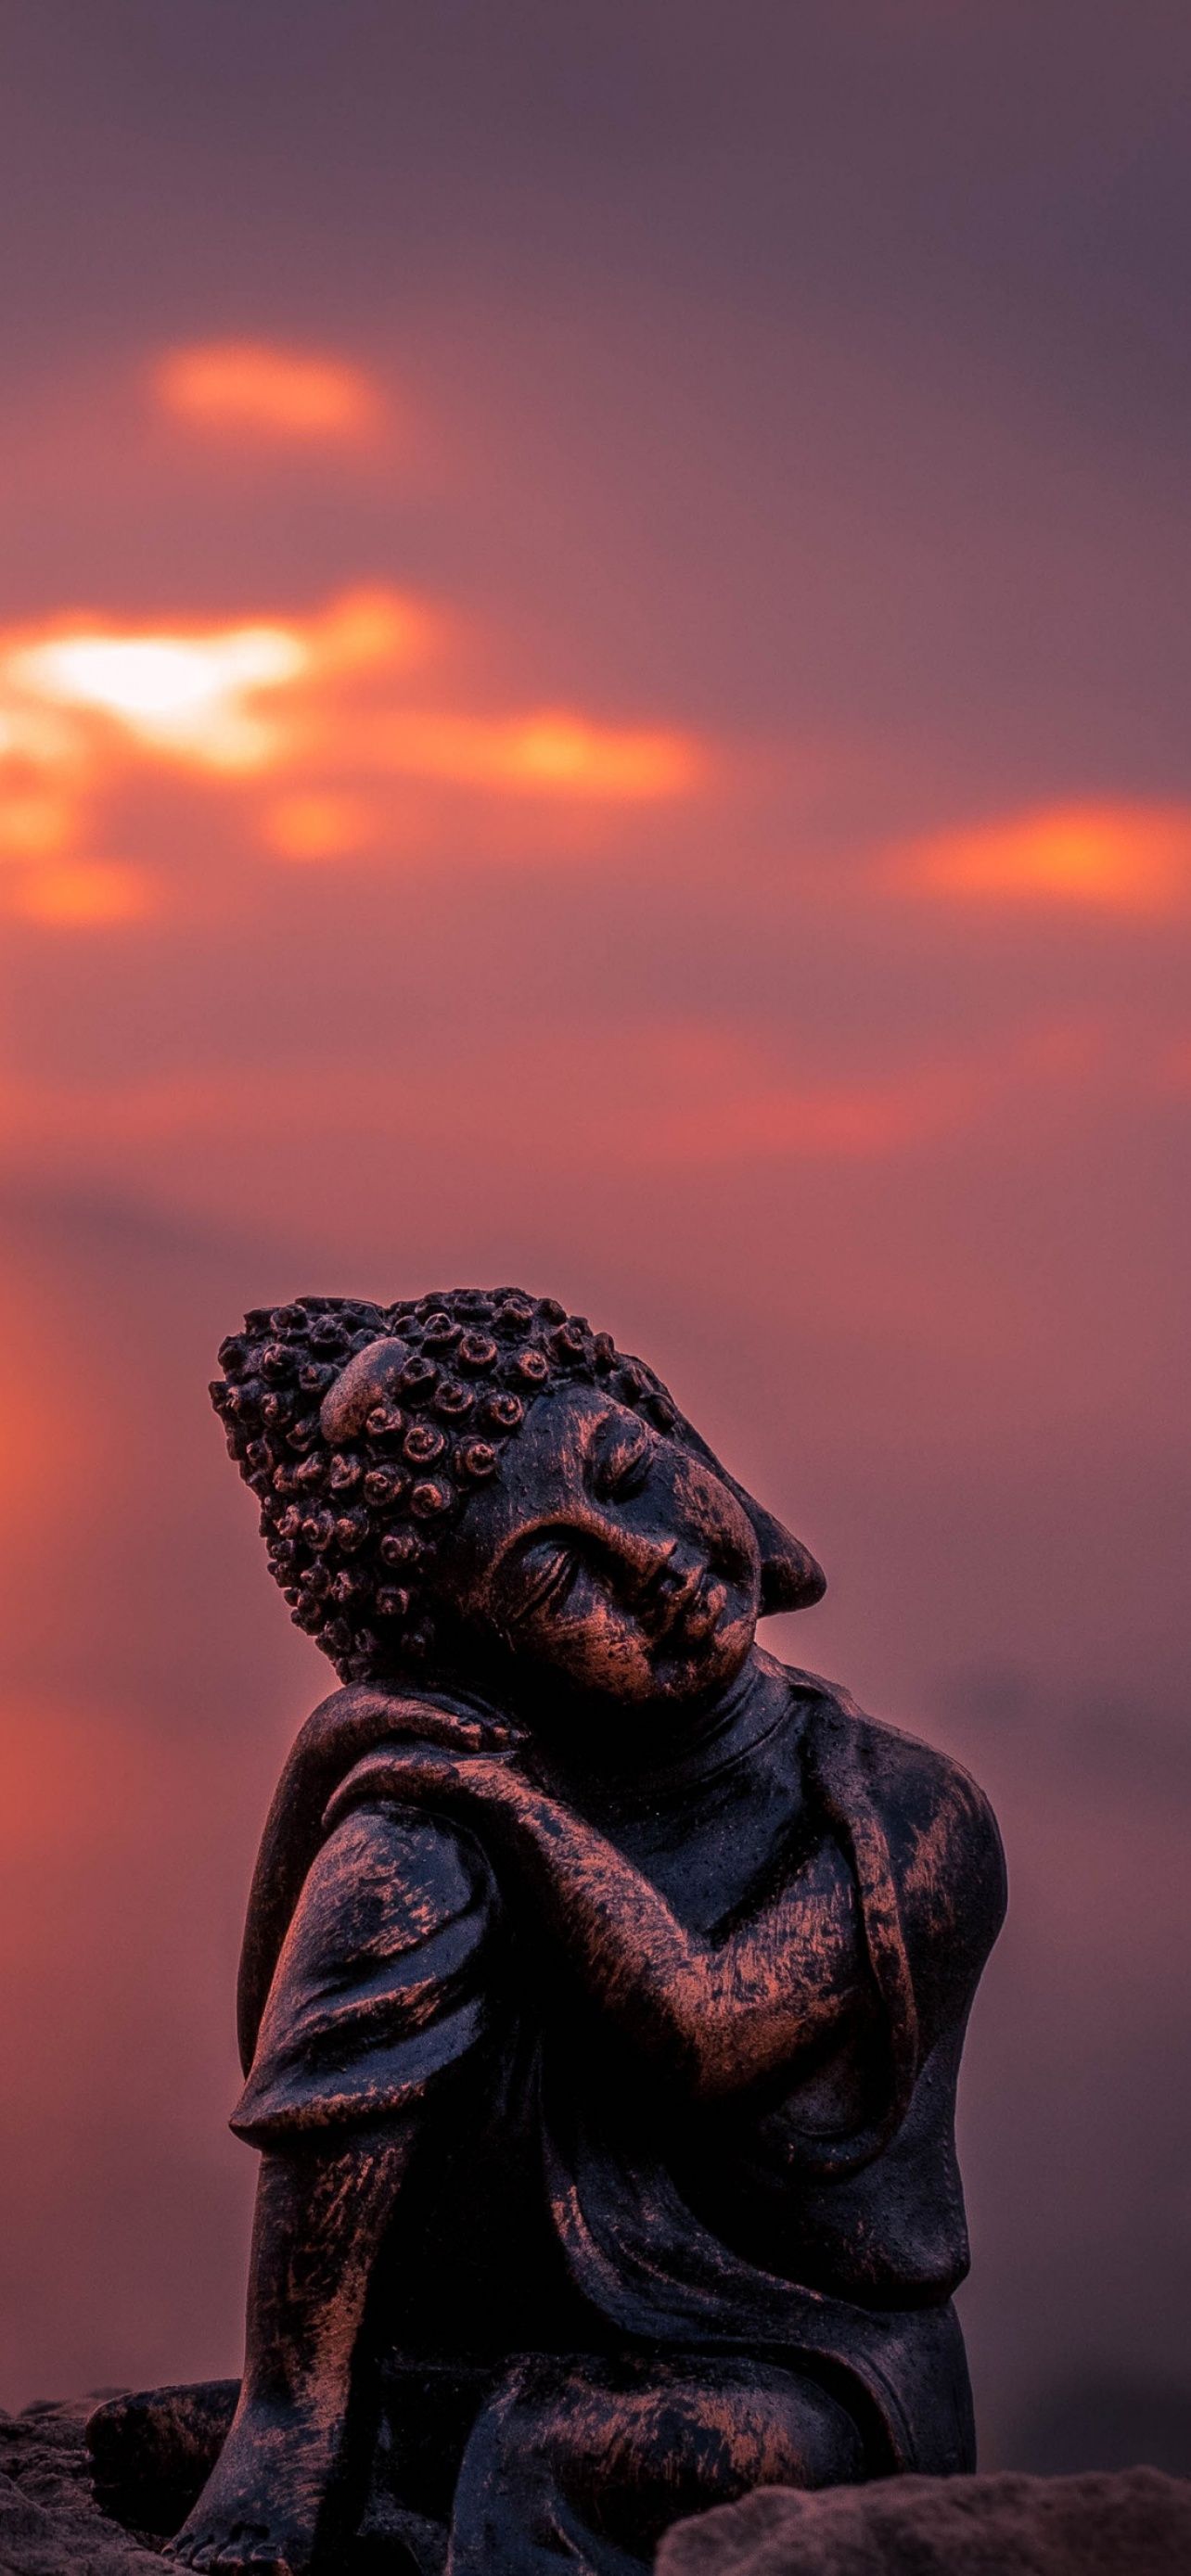  Buddha Hintergrundbild 1284x2778. Lord Buddha Wallpaper 4K, Statue, Sunset, Photography